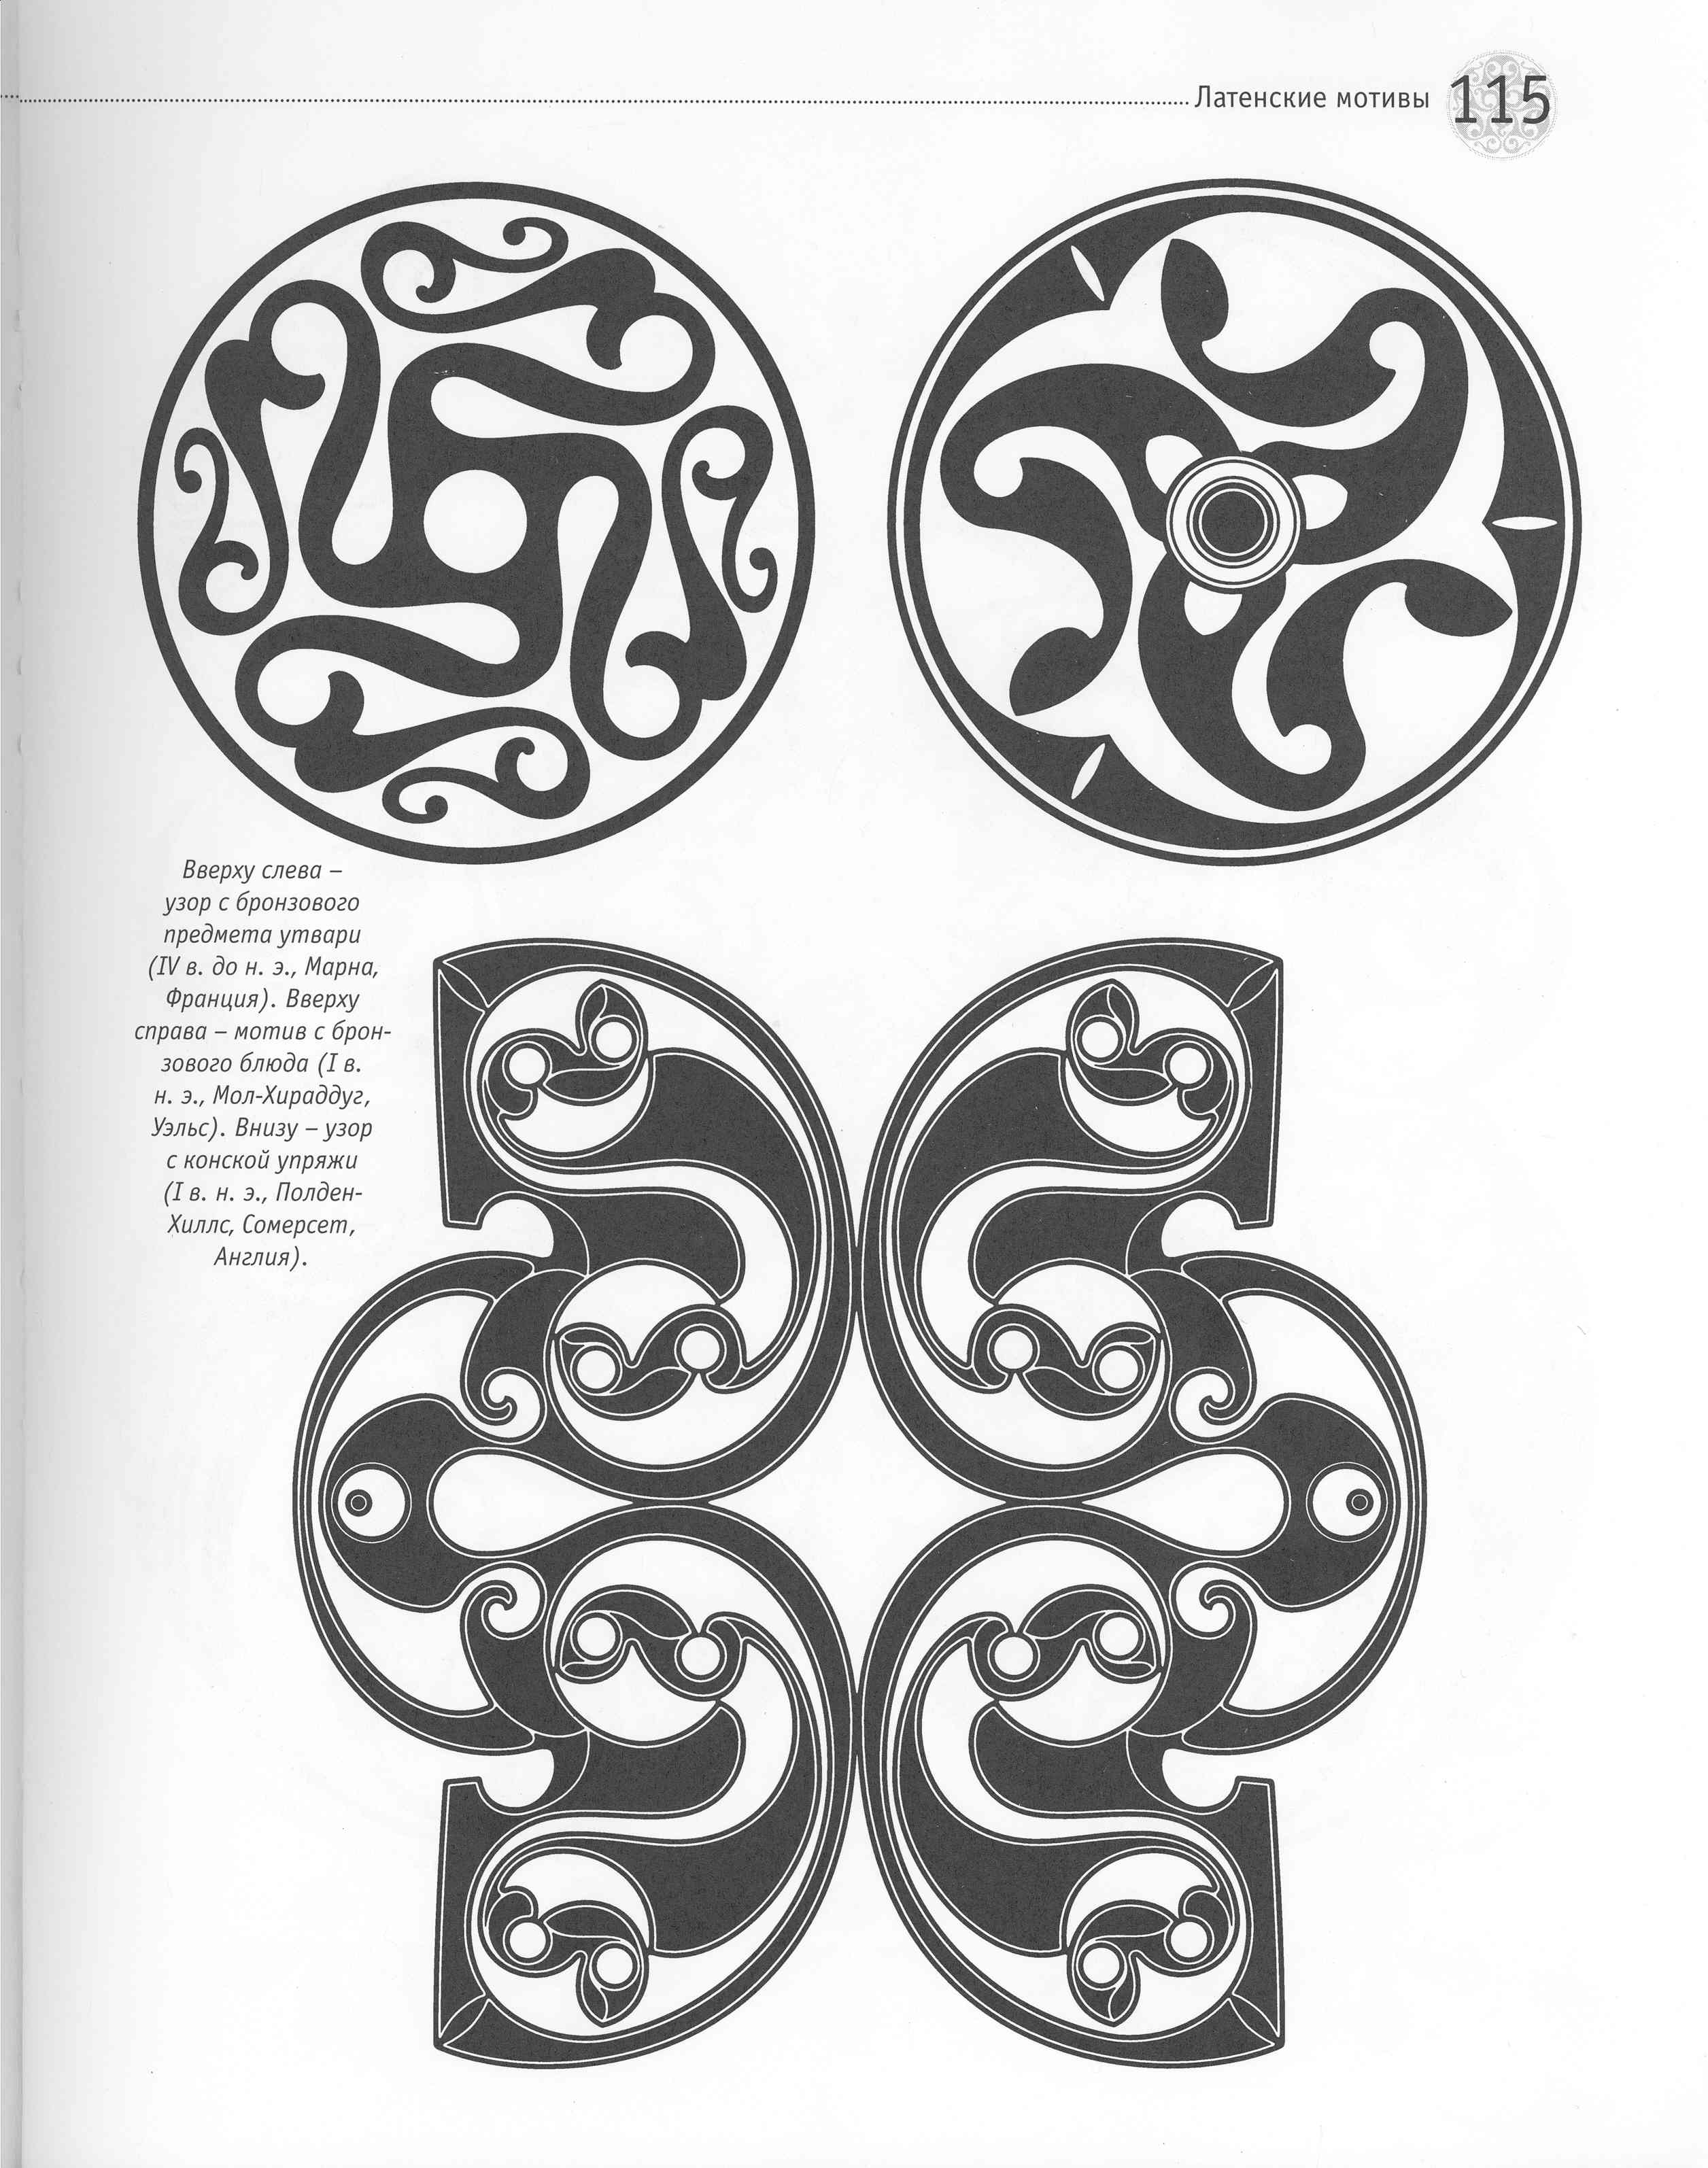 Кельтский орнамент Латенская культура